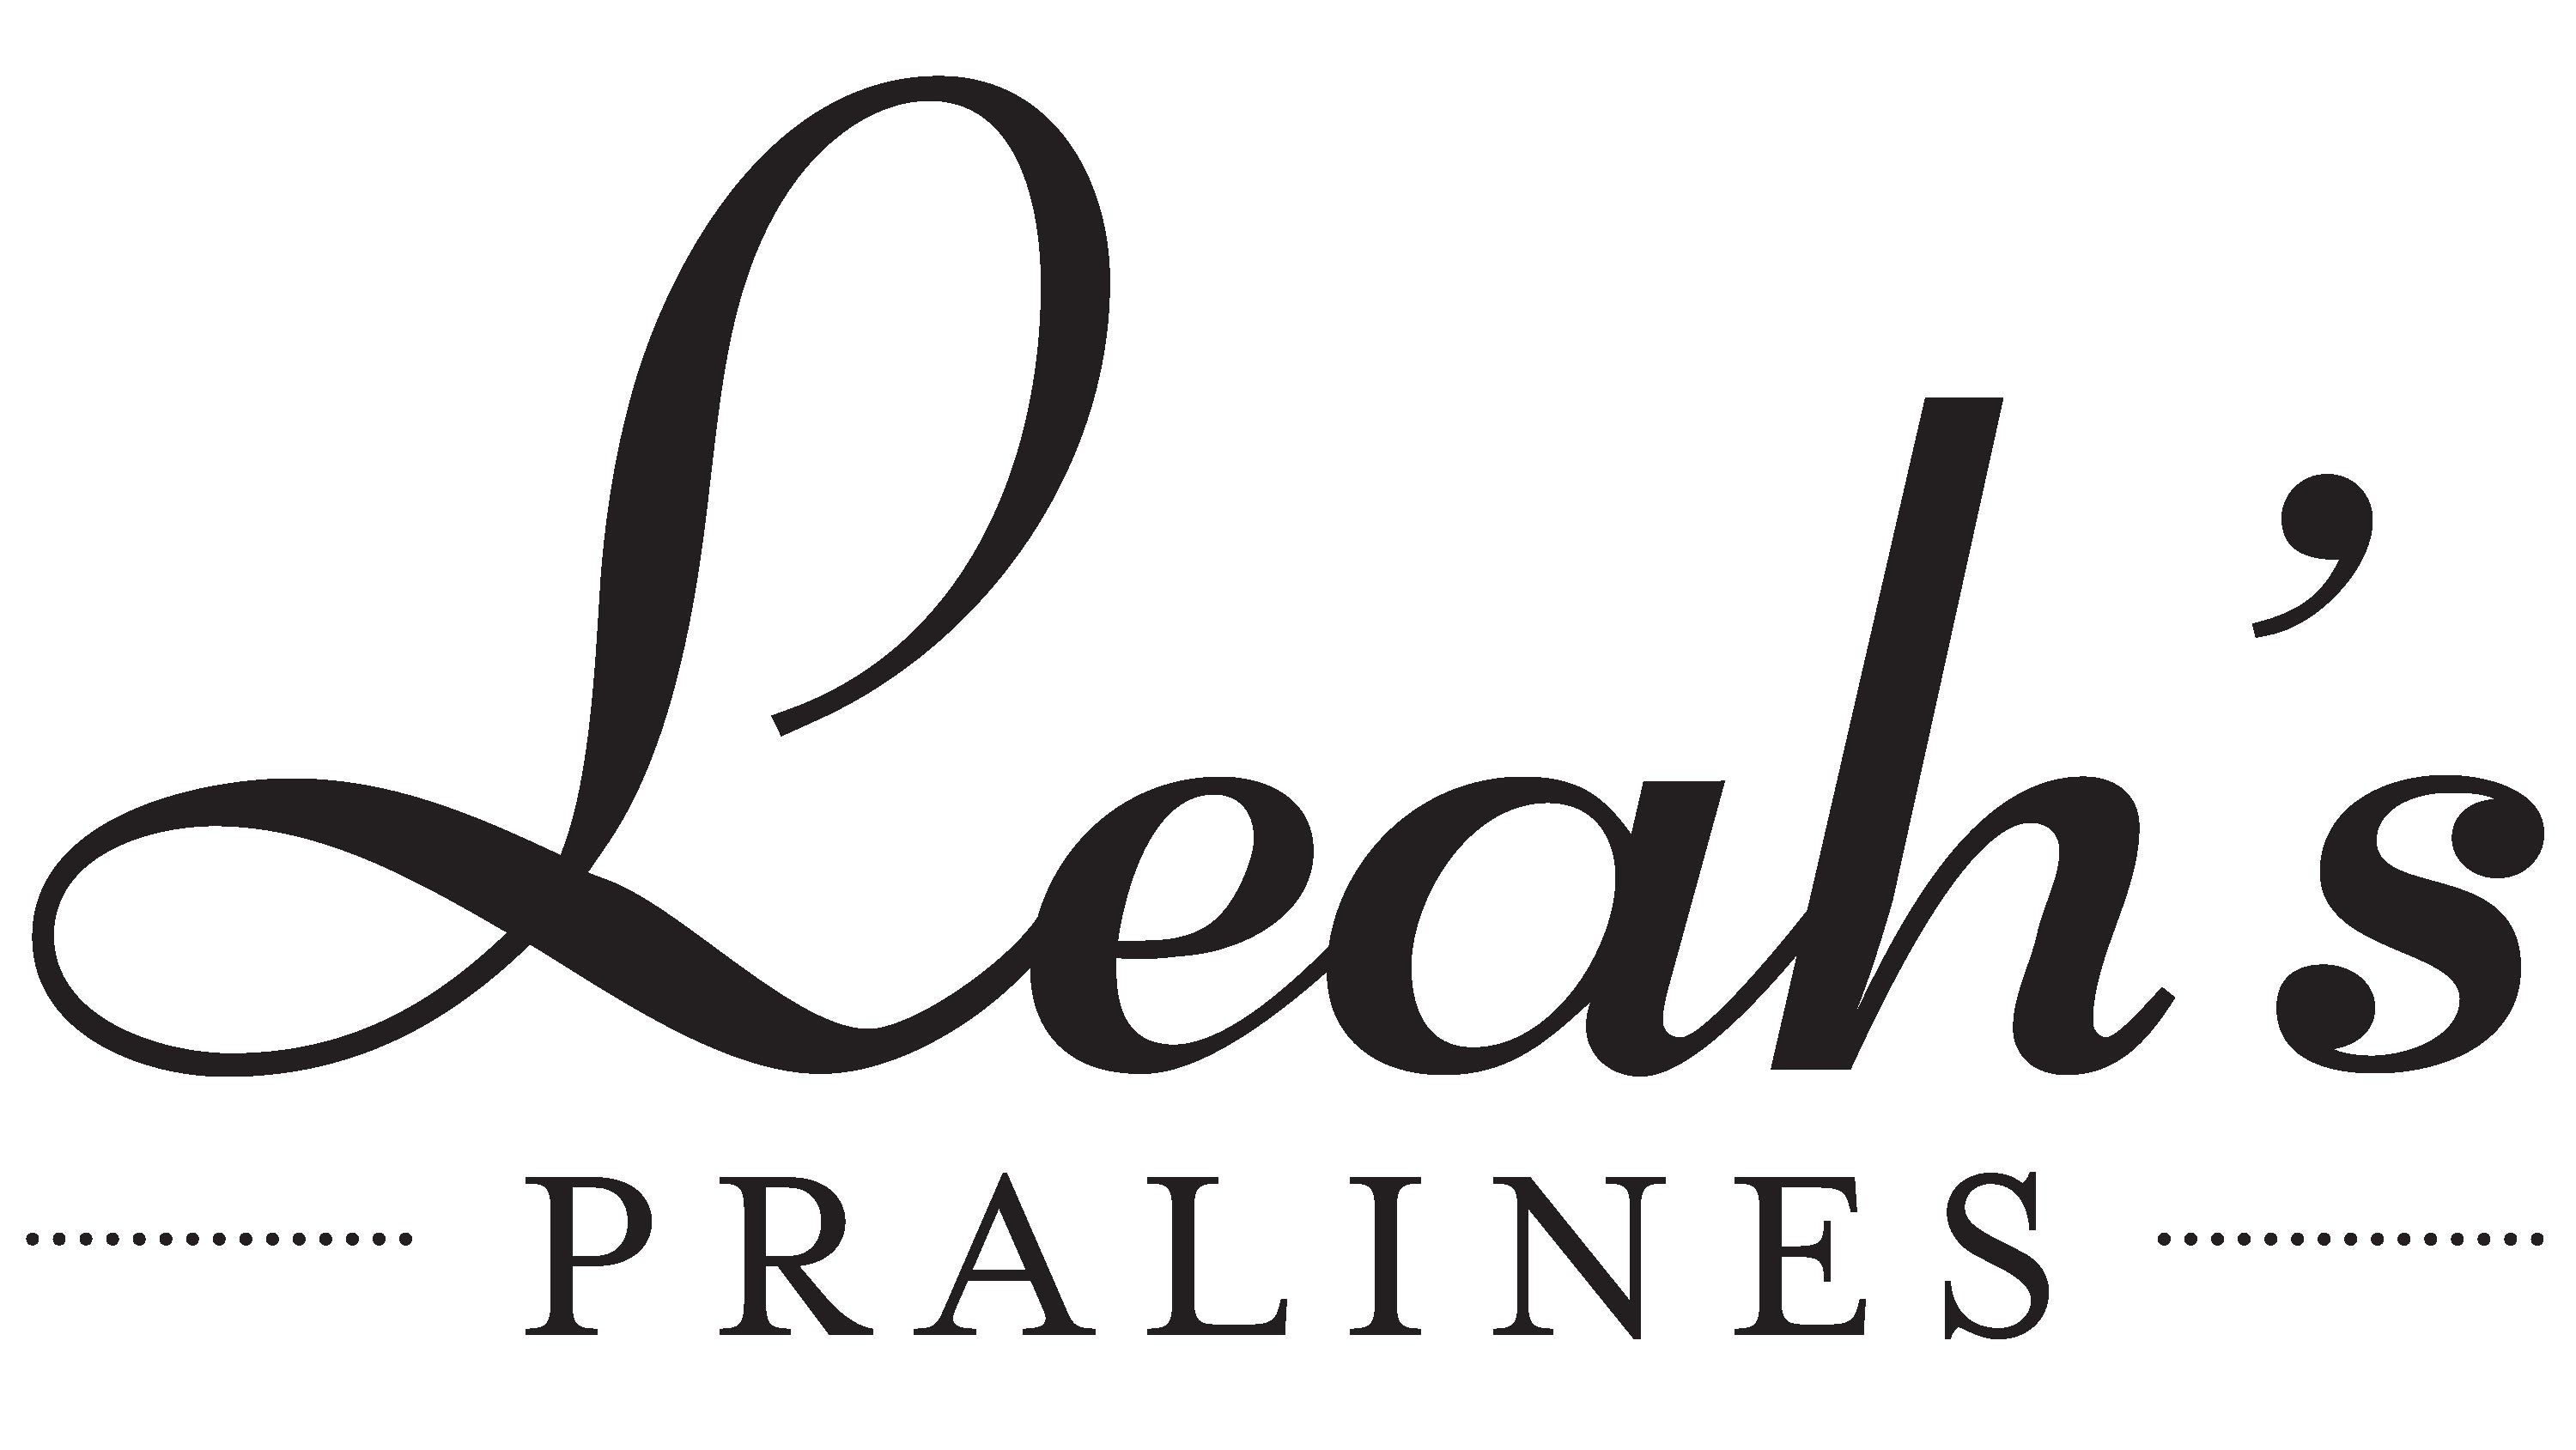 Hot Sauce - Leah's Pralines